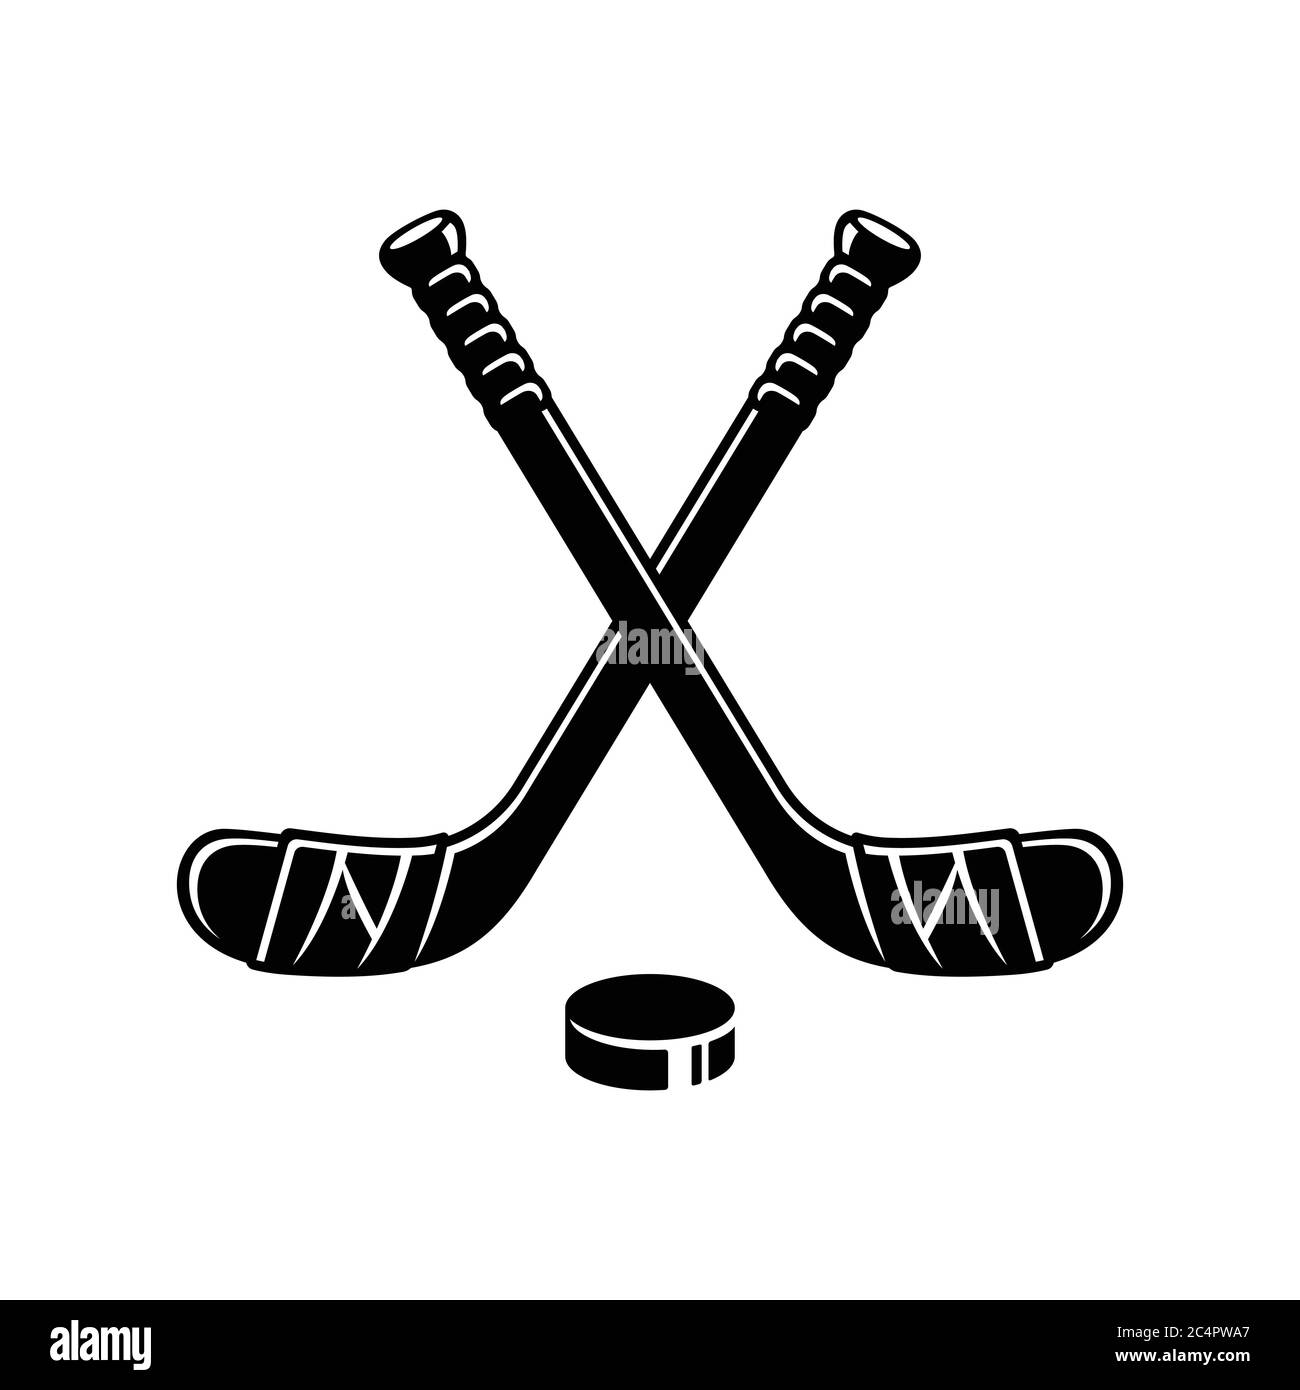 Logo di hockey su ghiaccio, due bastoni da hockey incrociati e un disco. Silhouette minimale, semplice illustrazione vettoriale in bianco e nero. Illustrazione Vettoriale